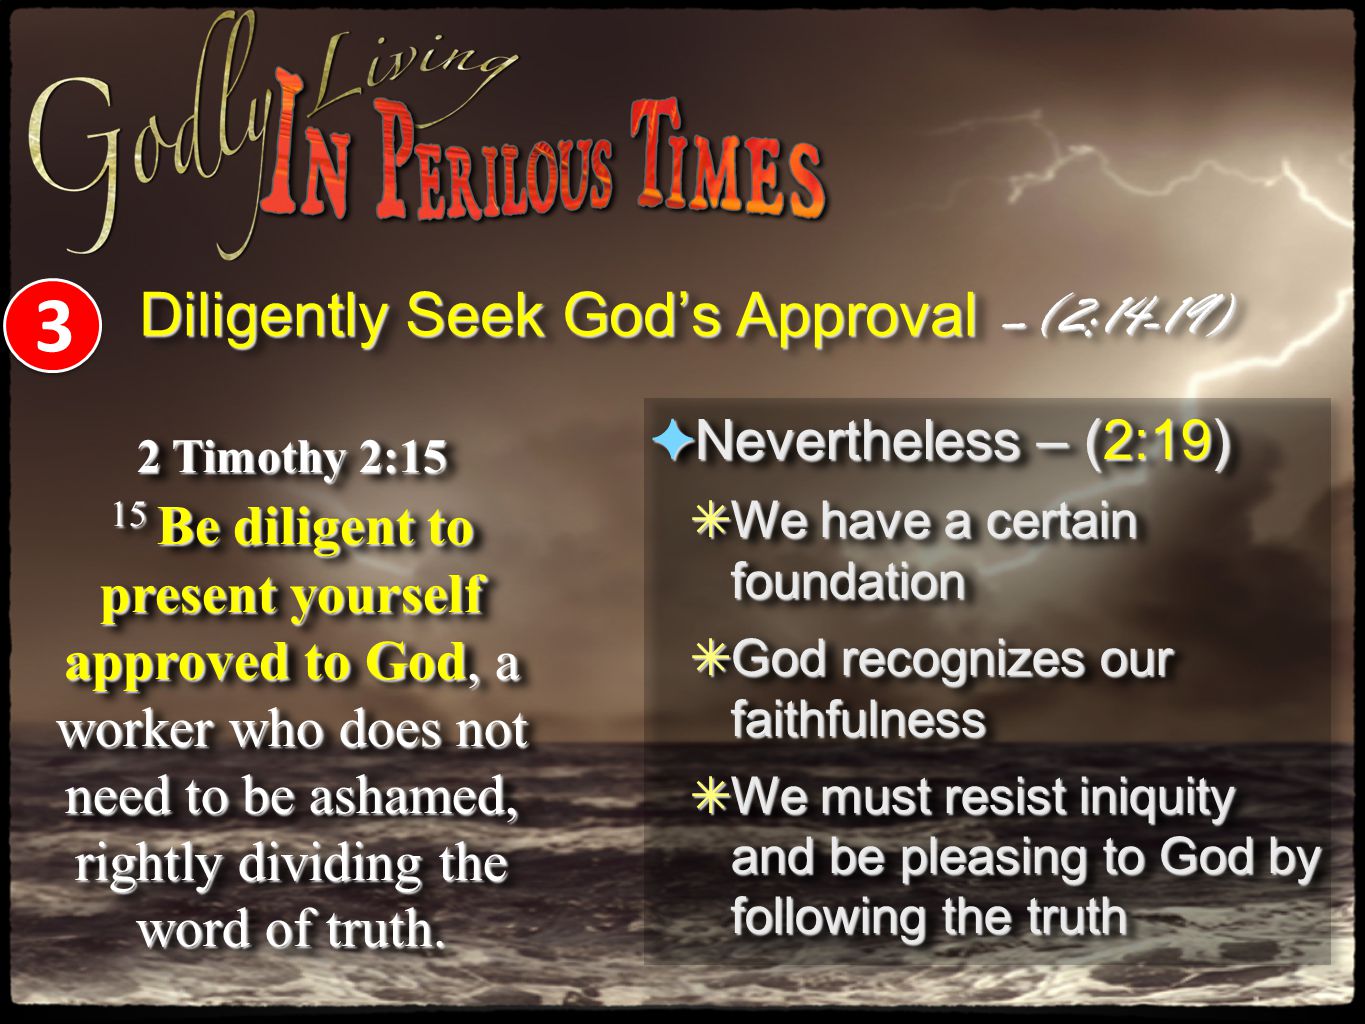 Diligently Seek God’s Approval –(2:14-19)